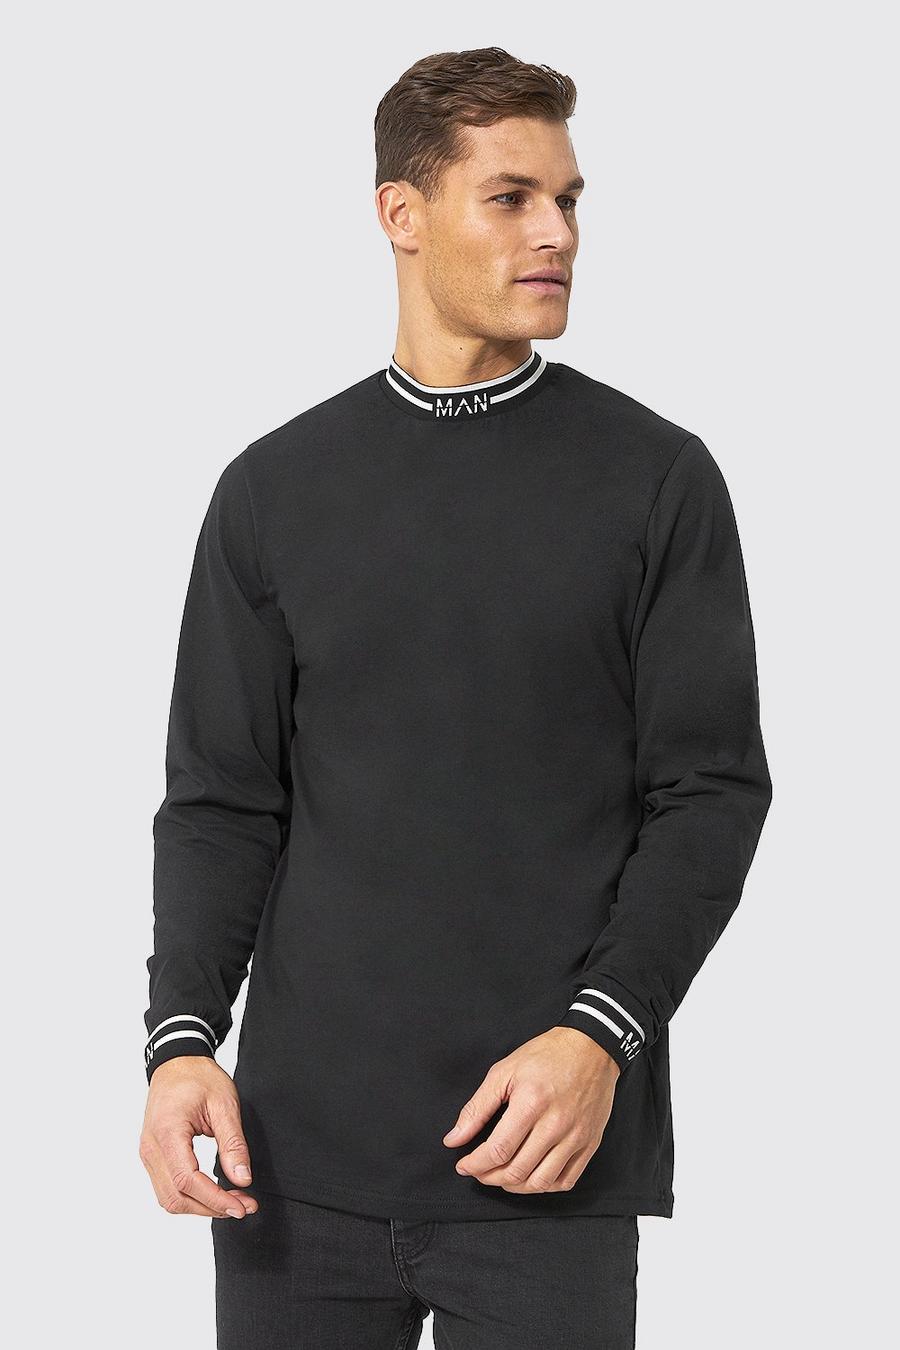 Tall langes geripptes Man T-Shirt, Black noir image number 1